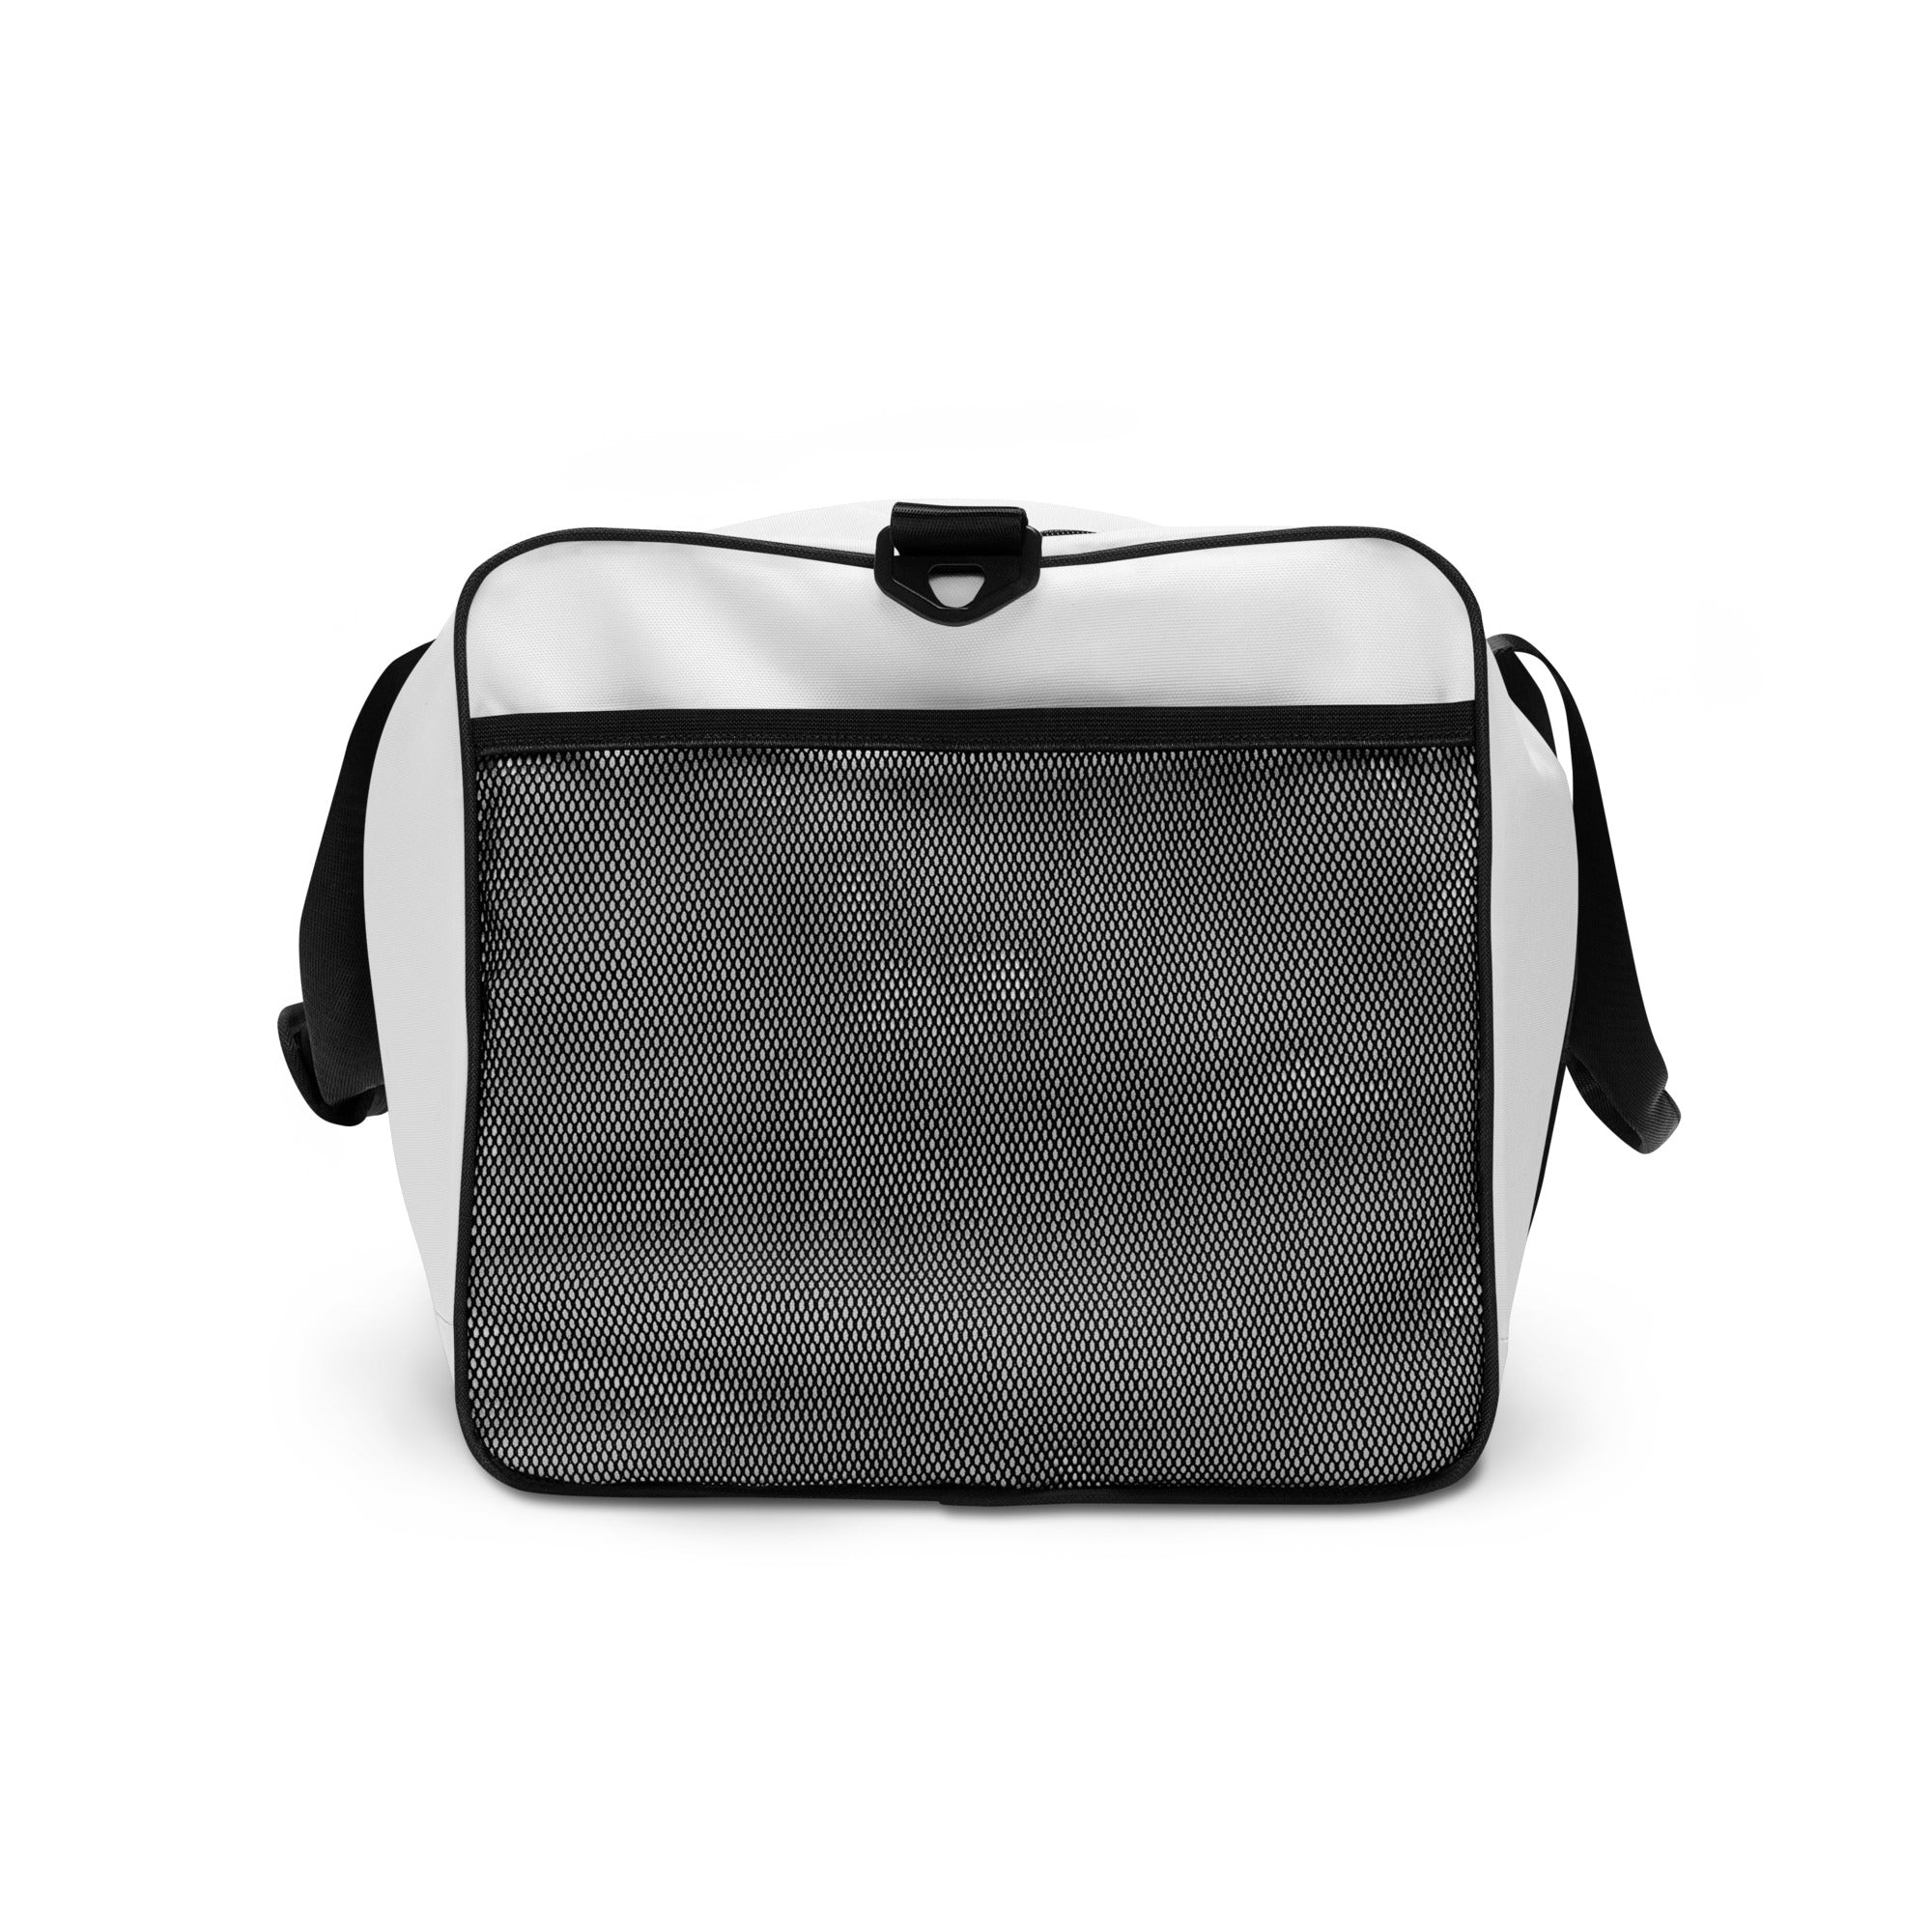 FIERCEPULSE Duffle Bag